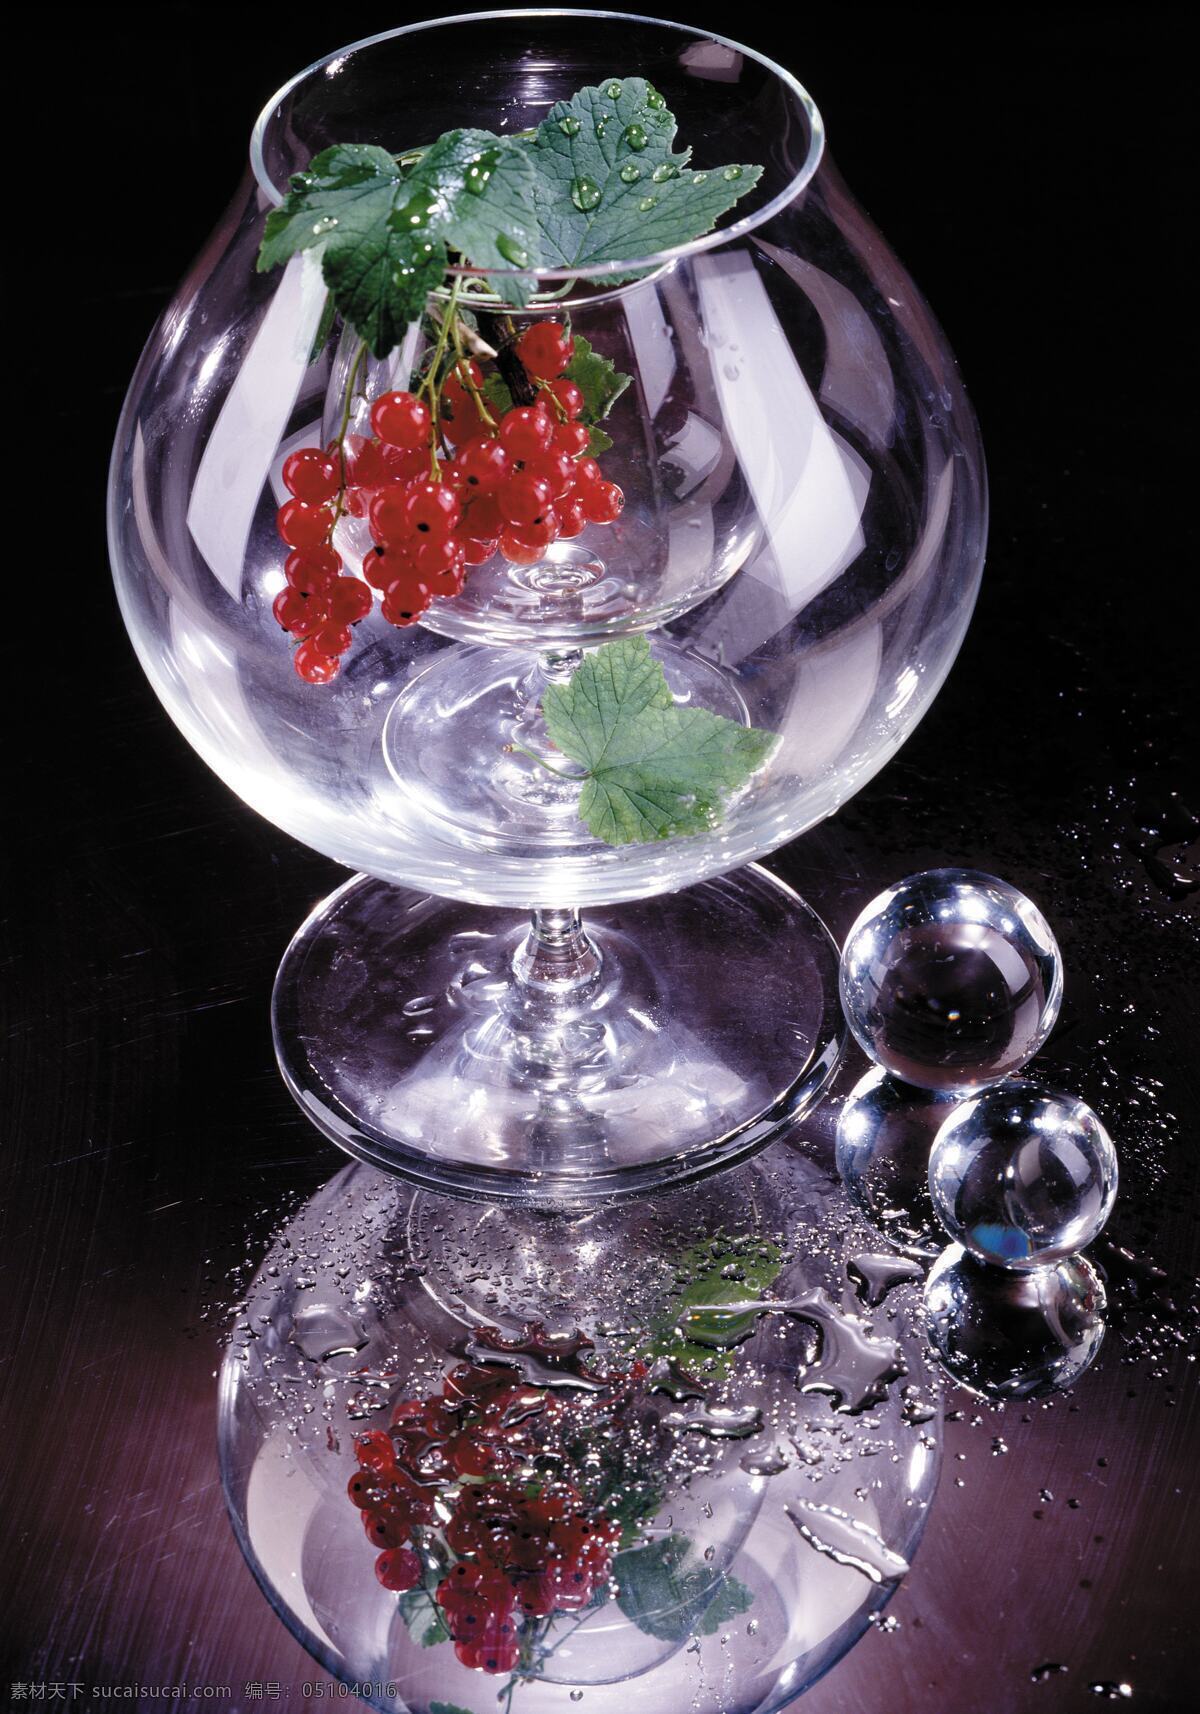 杯中情 玻璃杯 葡萄 透明玻璃杯 葡萄美酒 黑加仑 下午茶 餐饮美食 餐具厨具